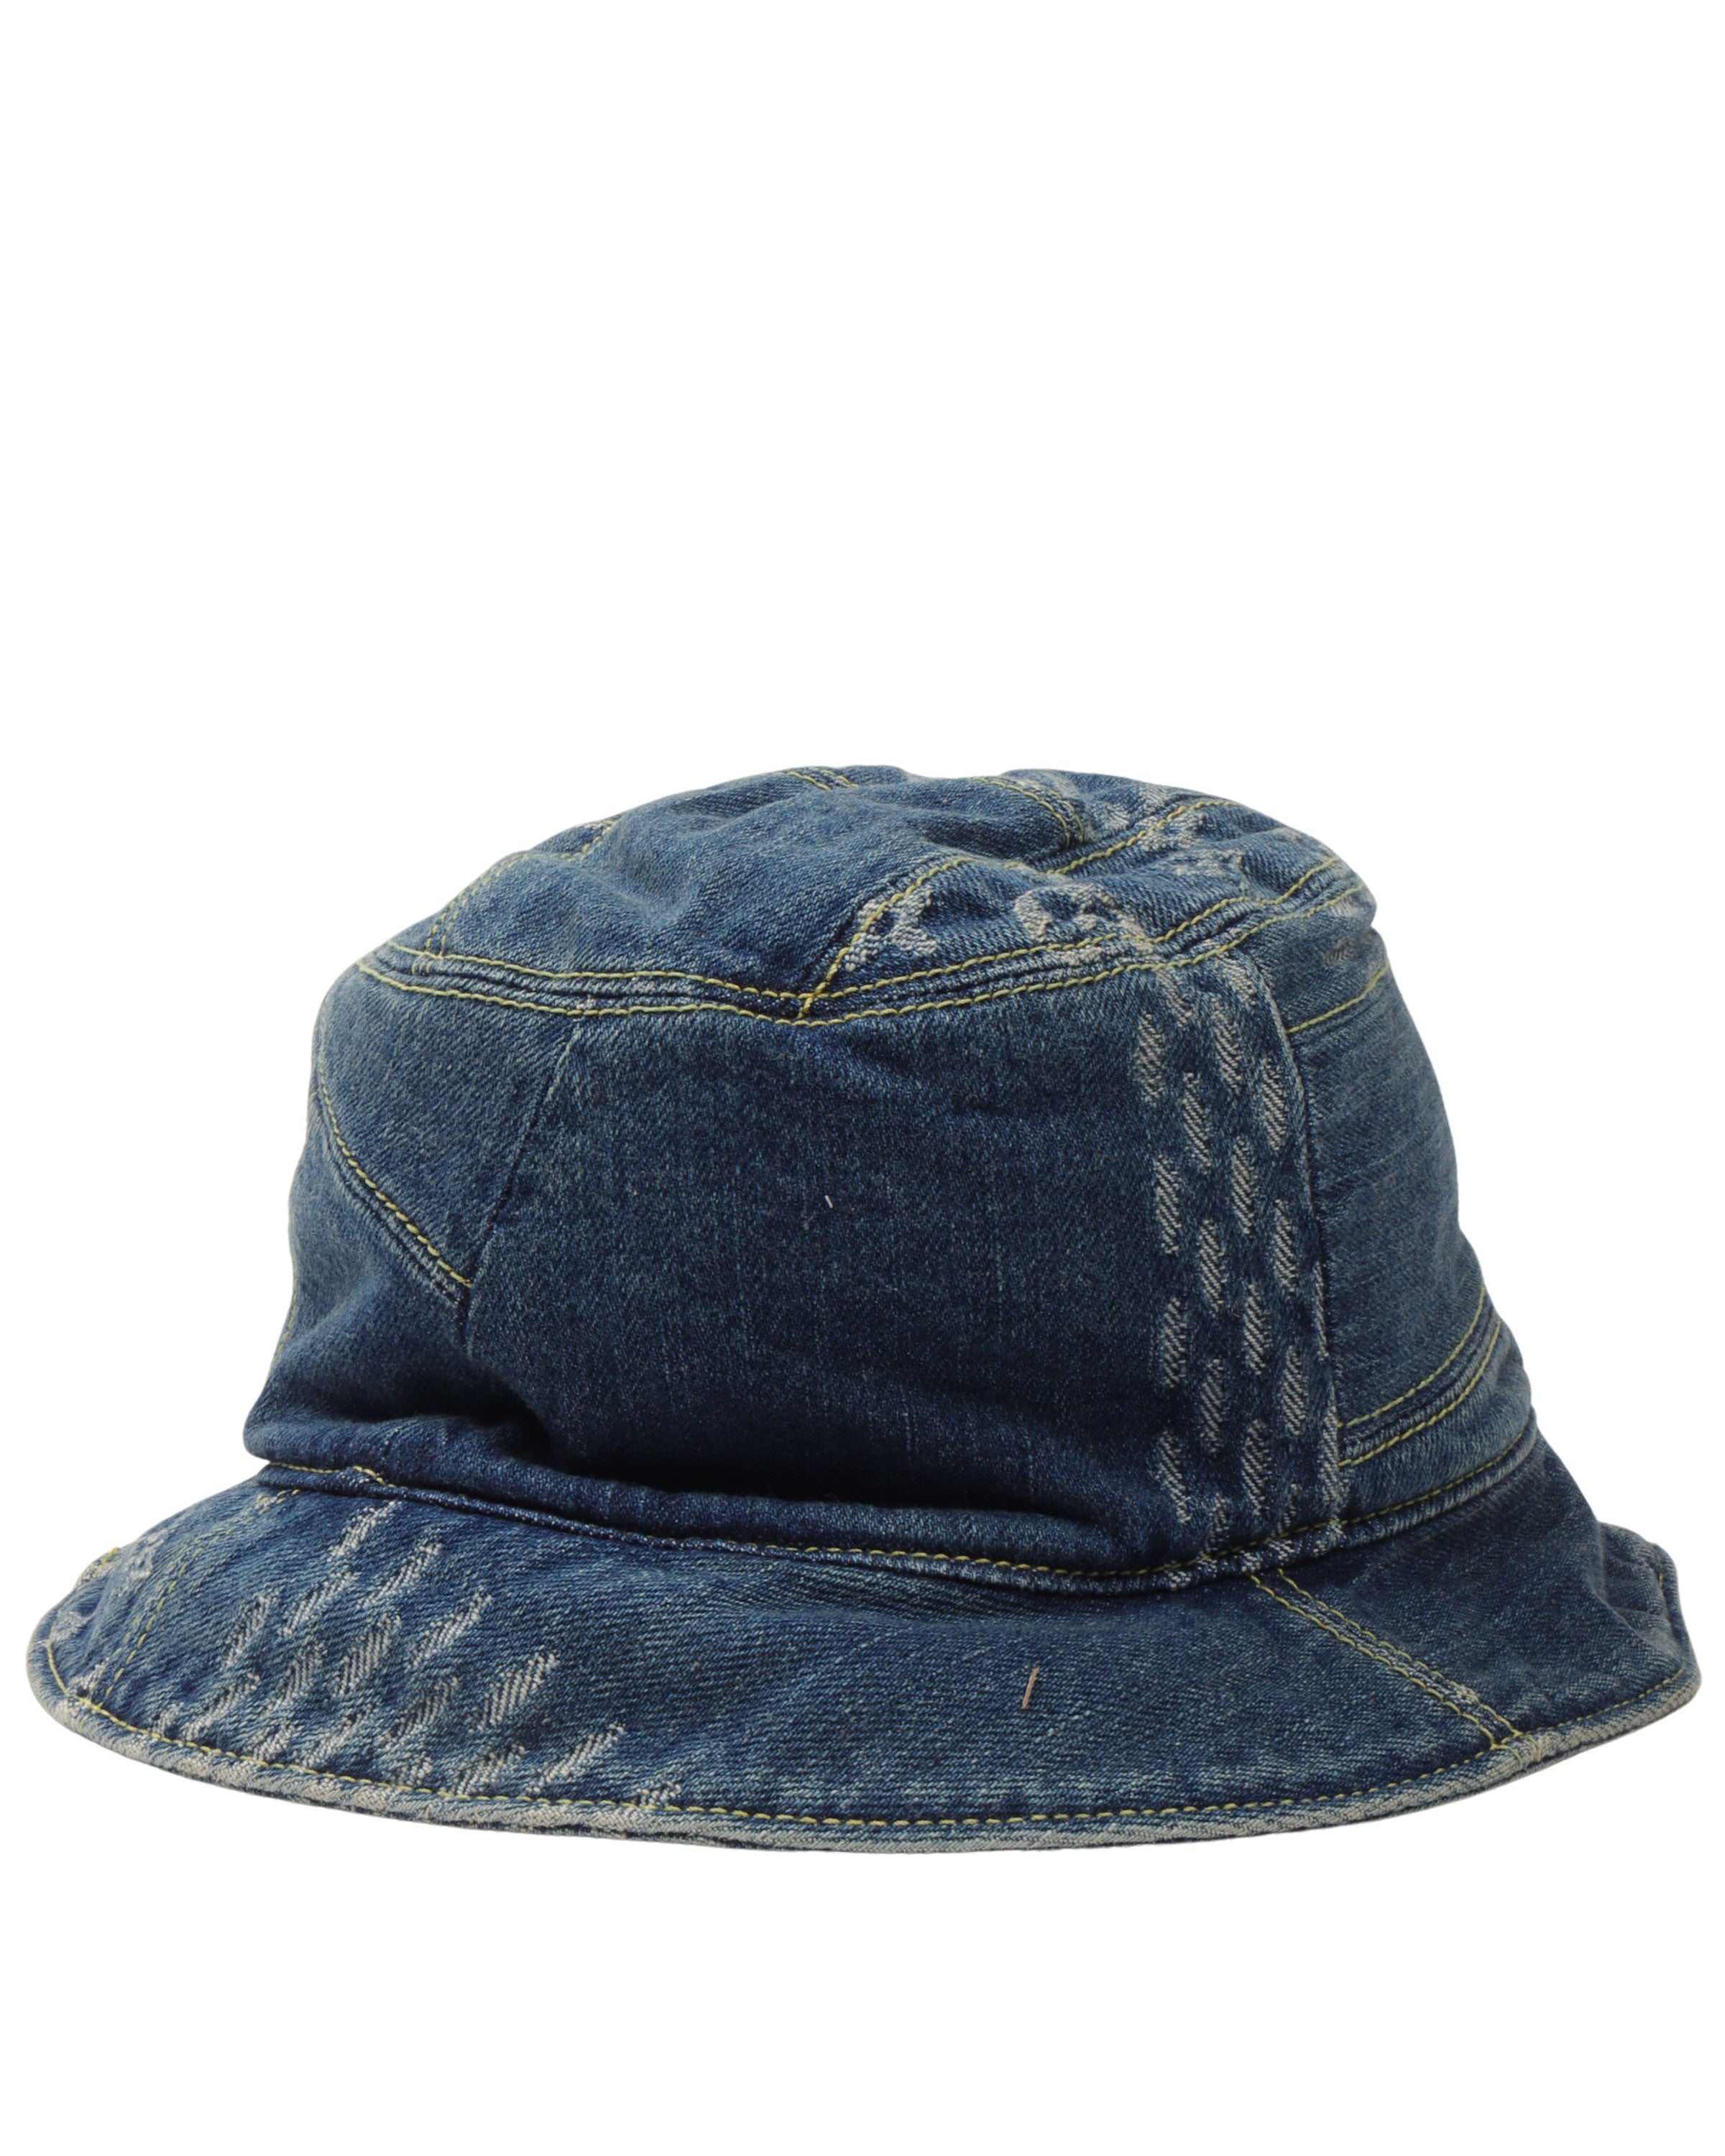 Louis Vuitton Denim Nigo Bucket Hat